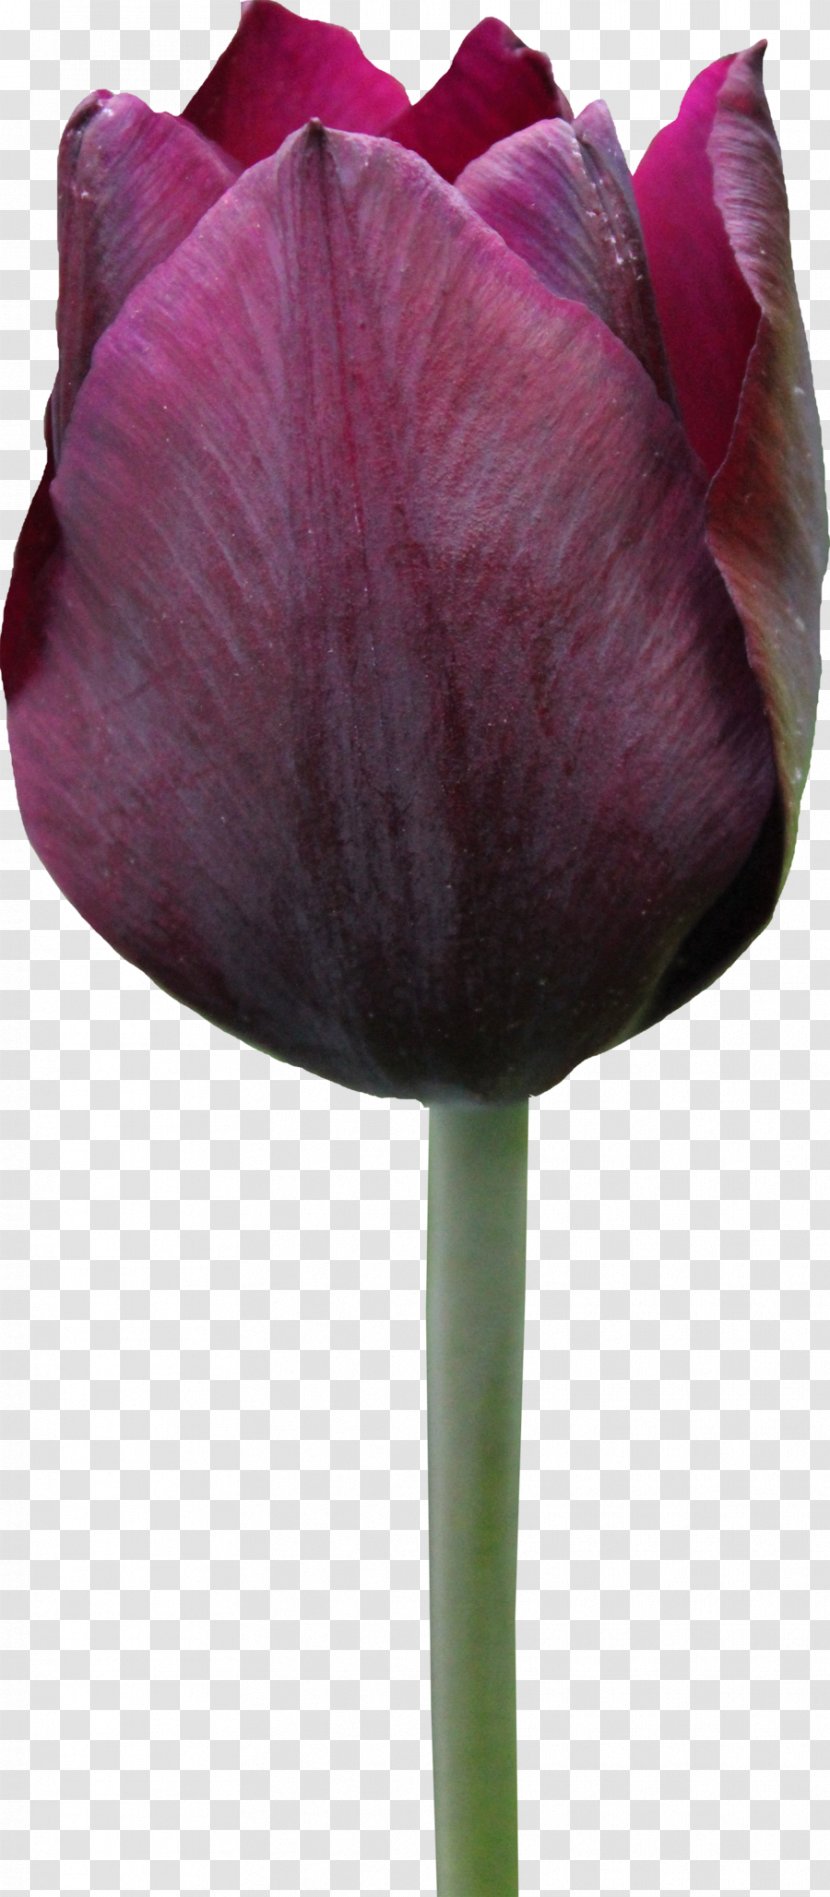 Tulip Flower Rose - Image Transparent PNG